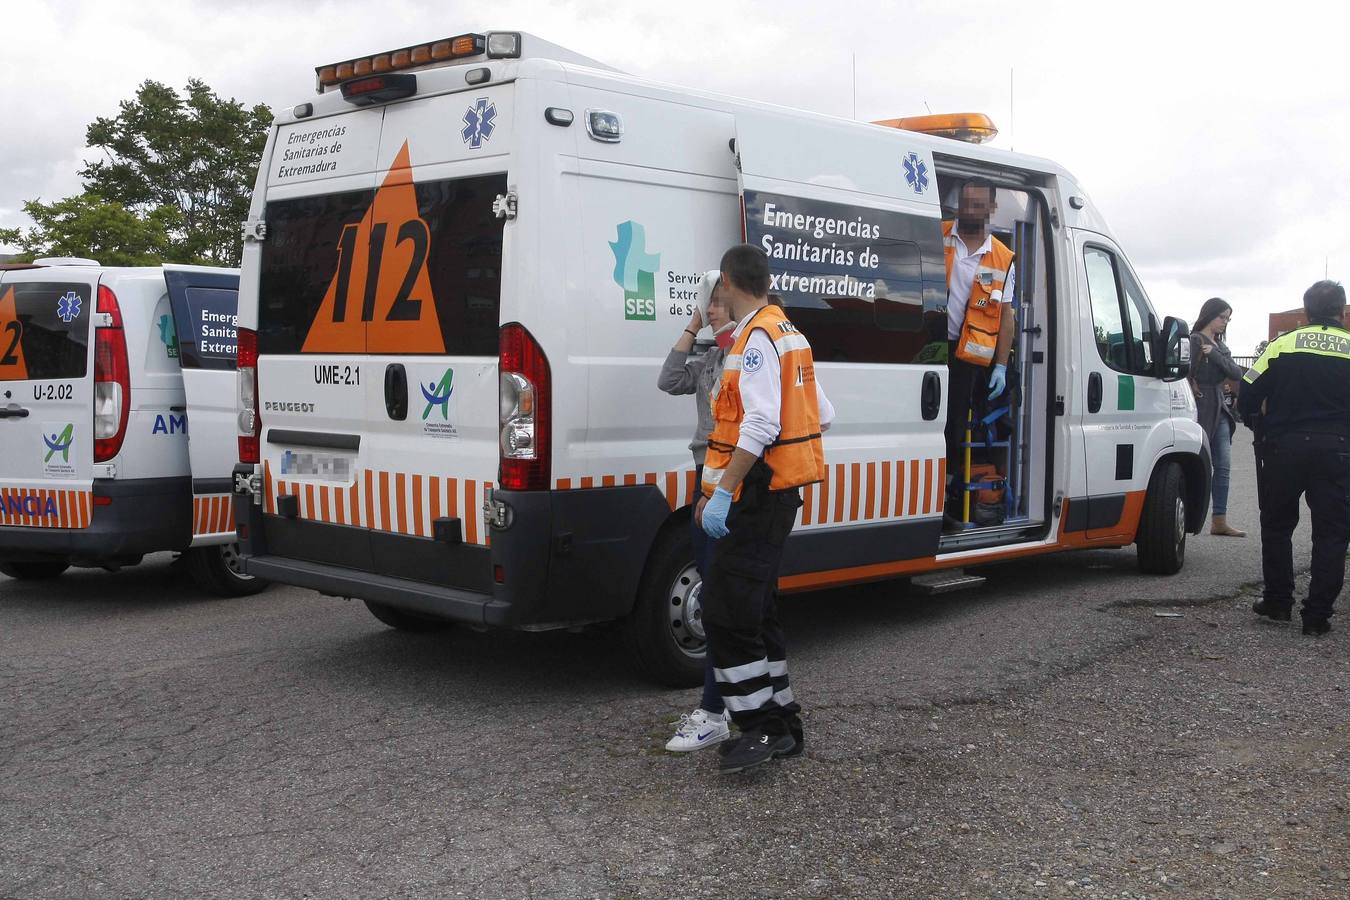 La joven herida ha sido atendida en el lugar del accidente por sanitarios del 112 Extremadura y, posteriormente, trasladada al hospital